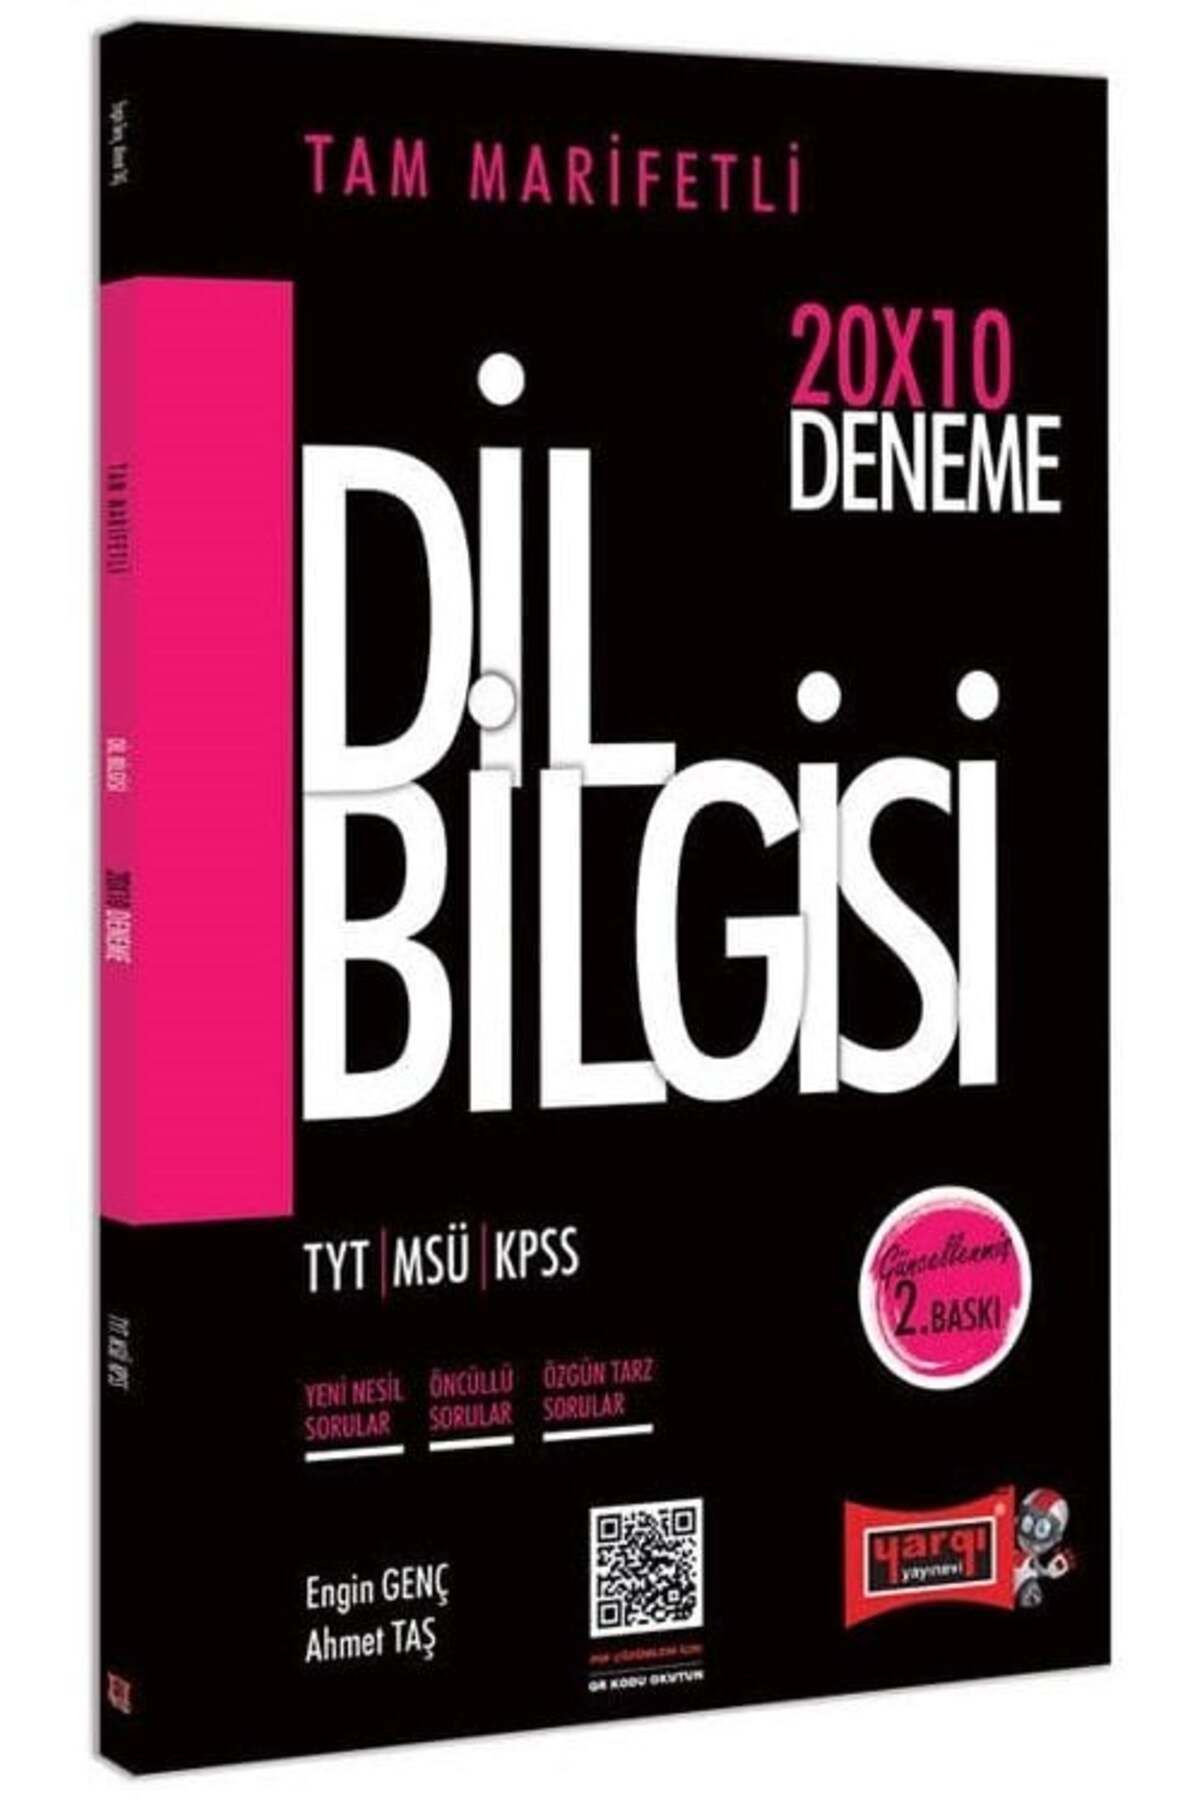 Yargı Yayınları Yargı 2021 Tyt Msü Kpss Dil Bilgisi Tam Marifetli 20x10 Deneme